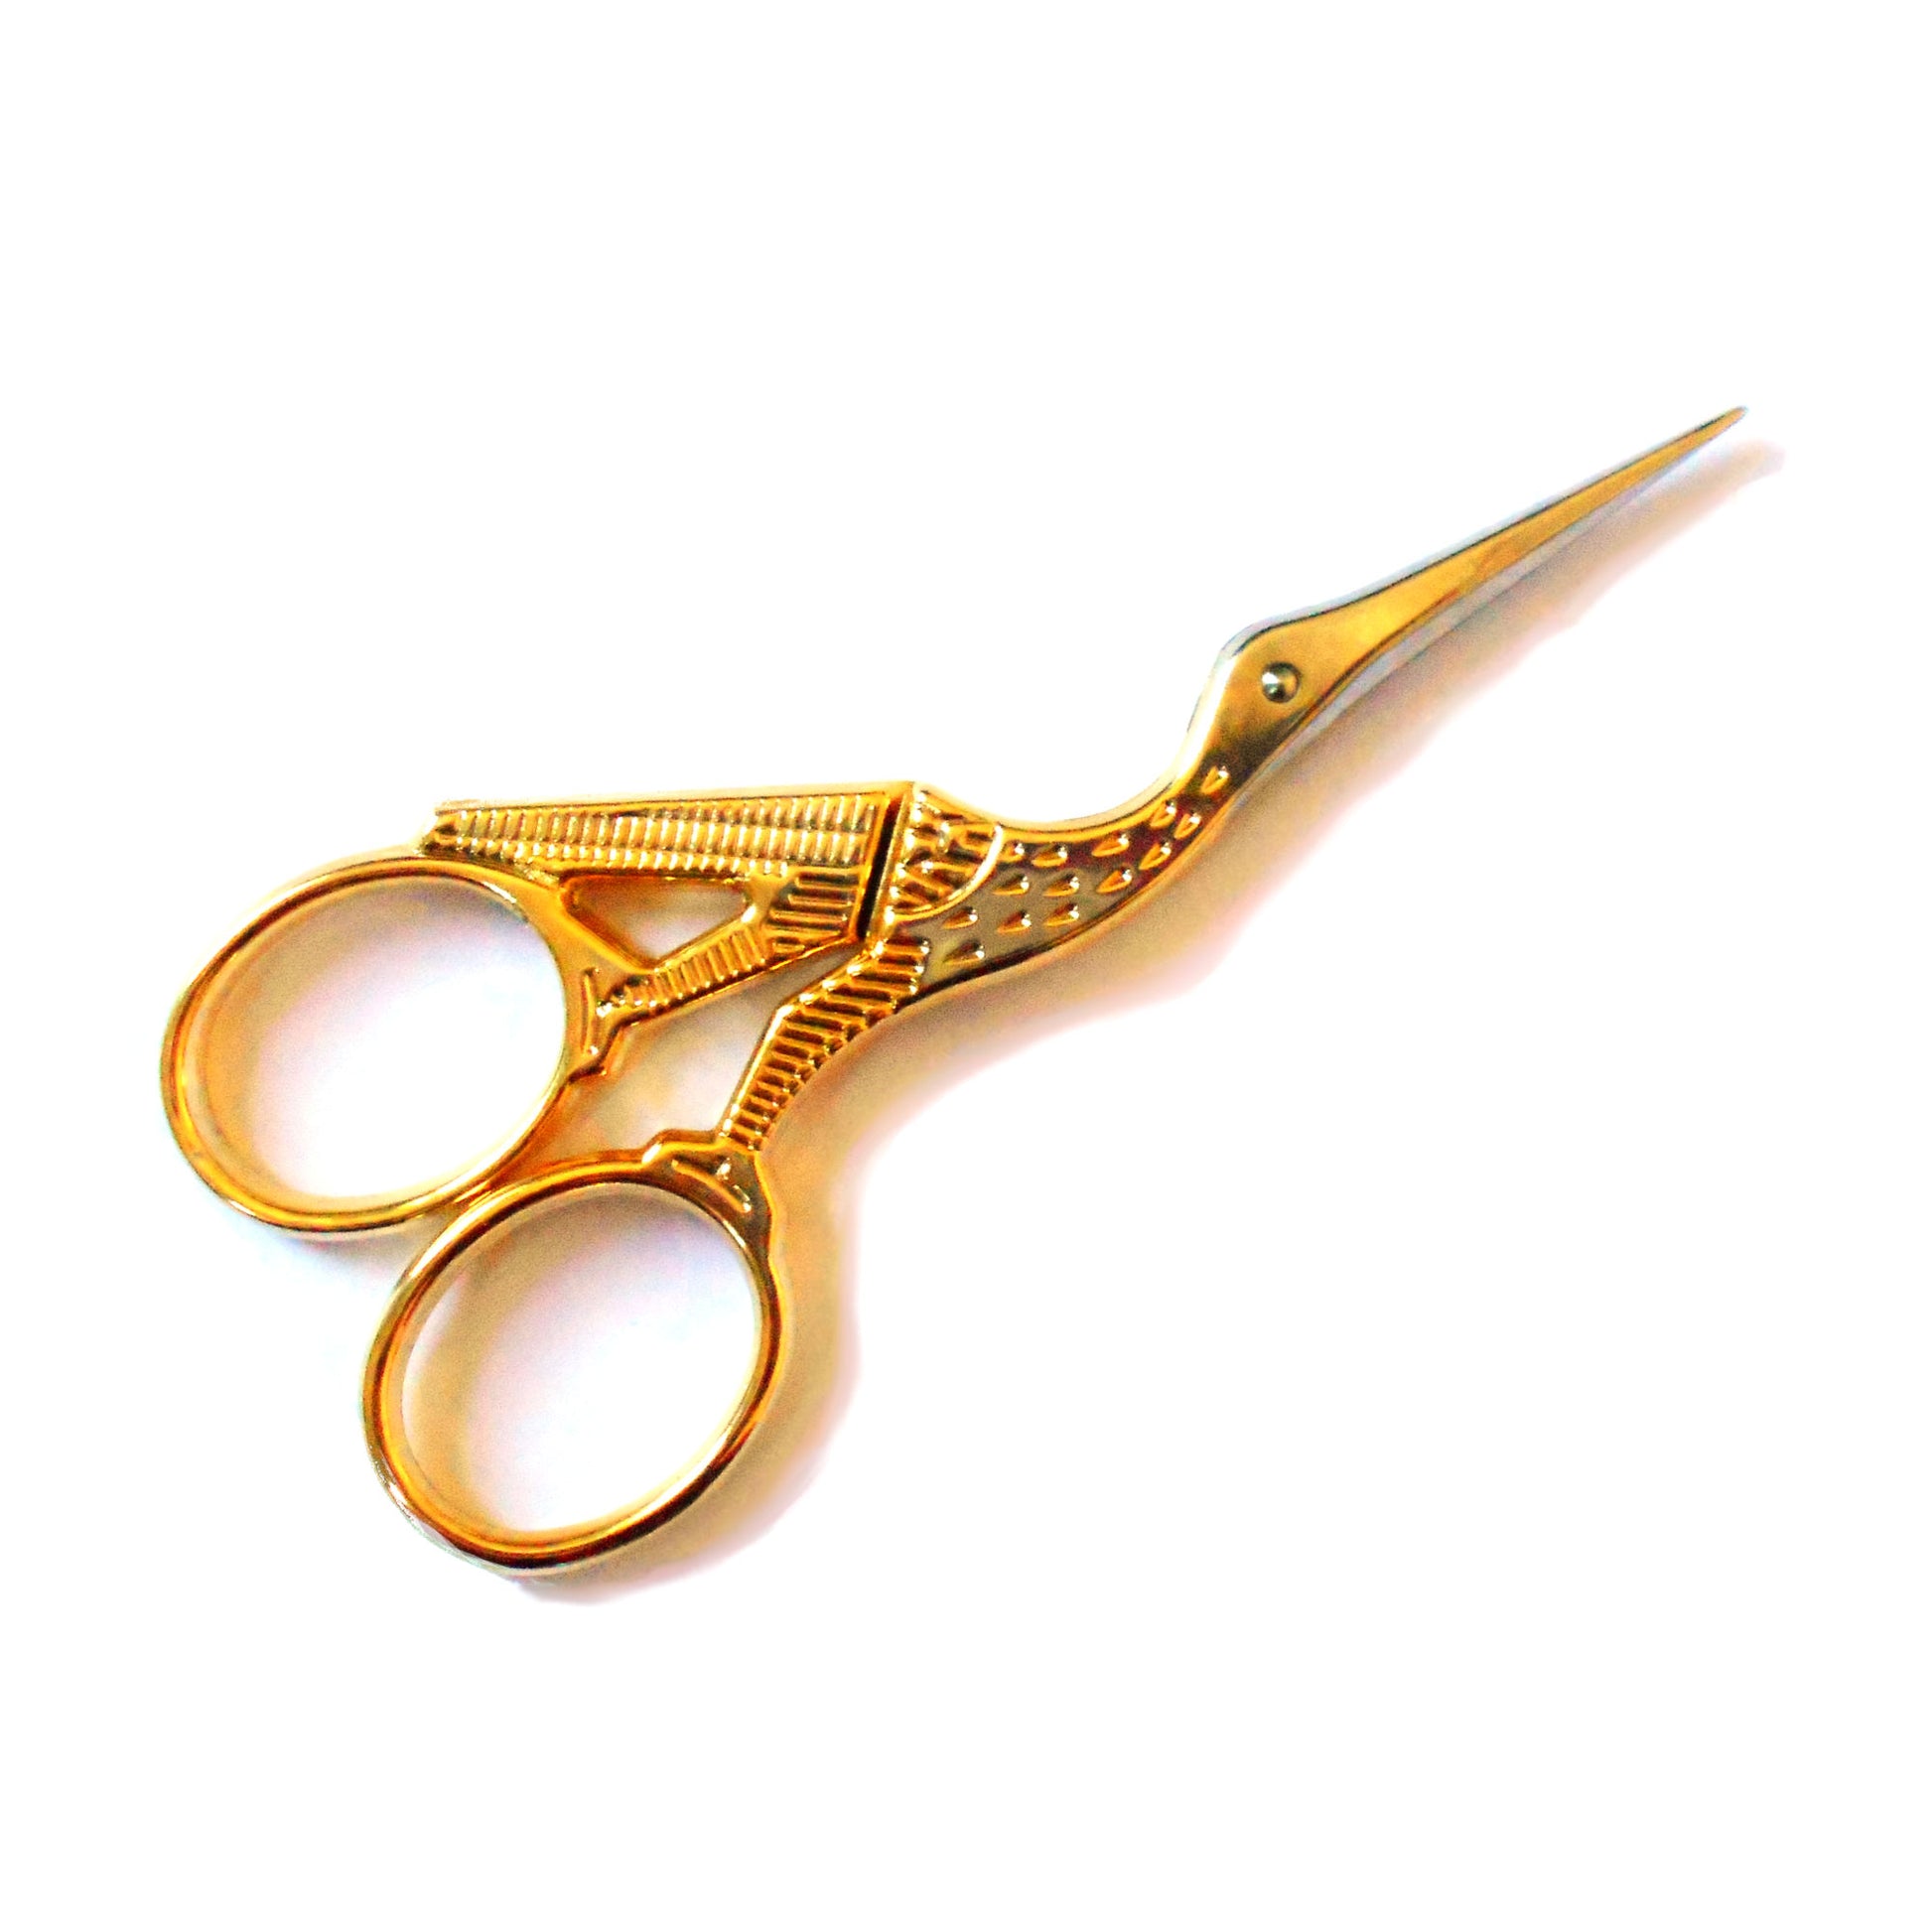 Gold Stork Needlework Scissors